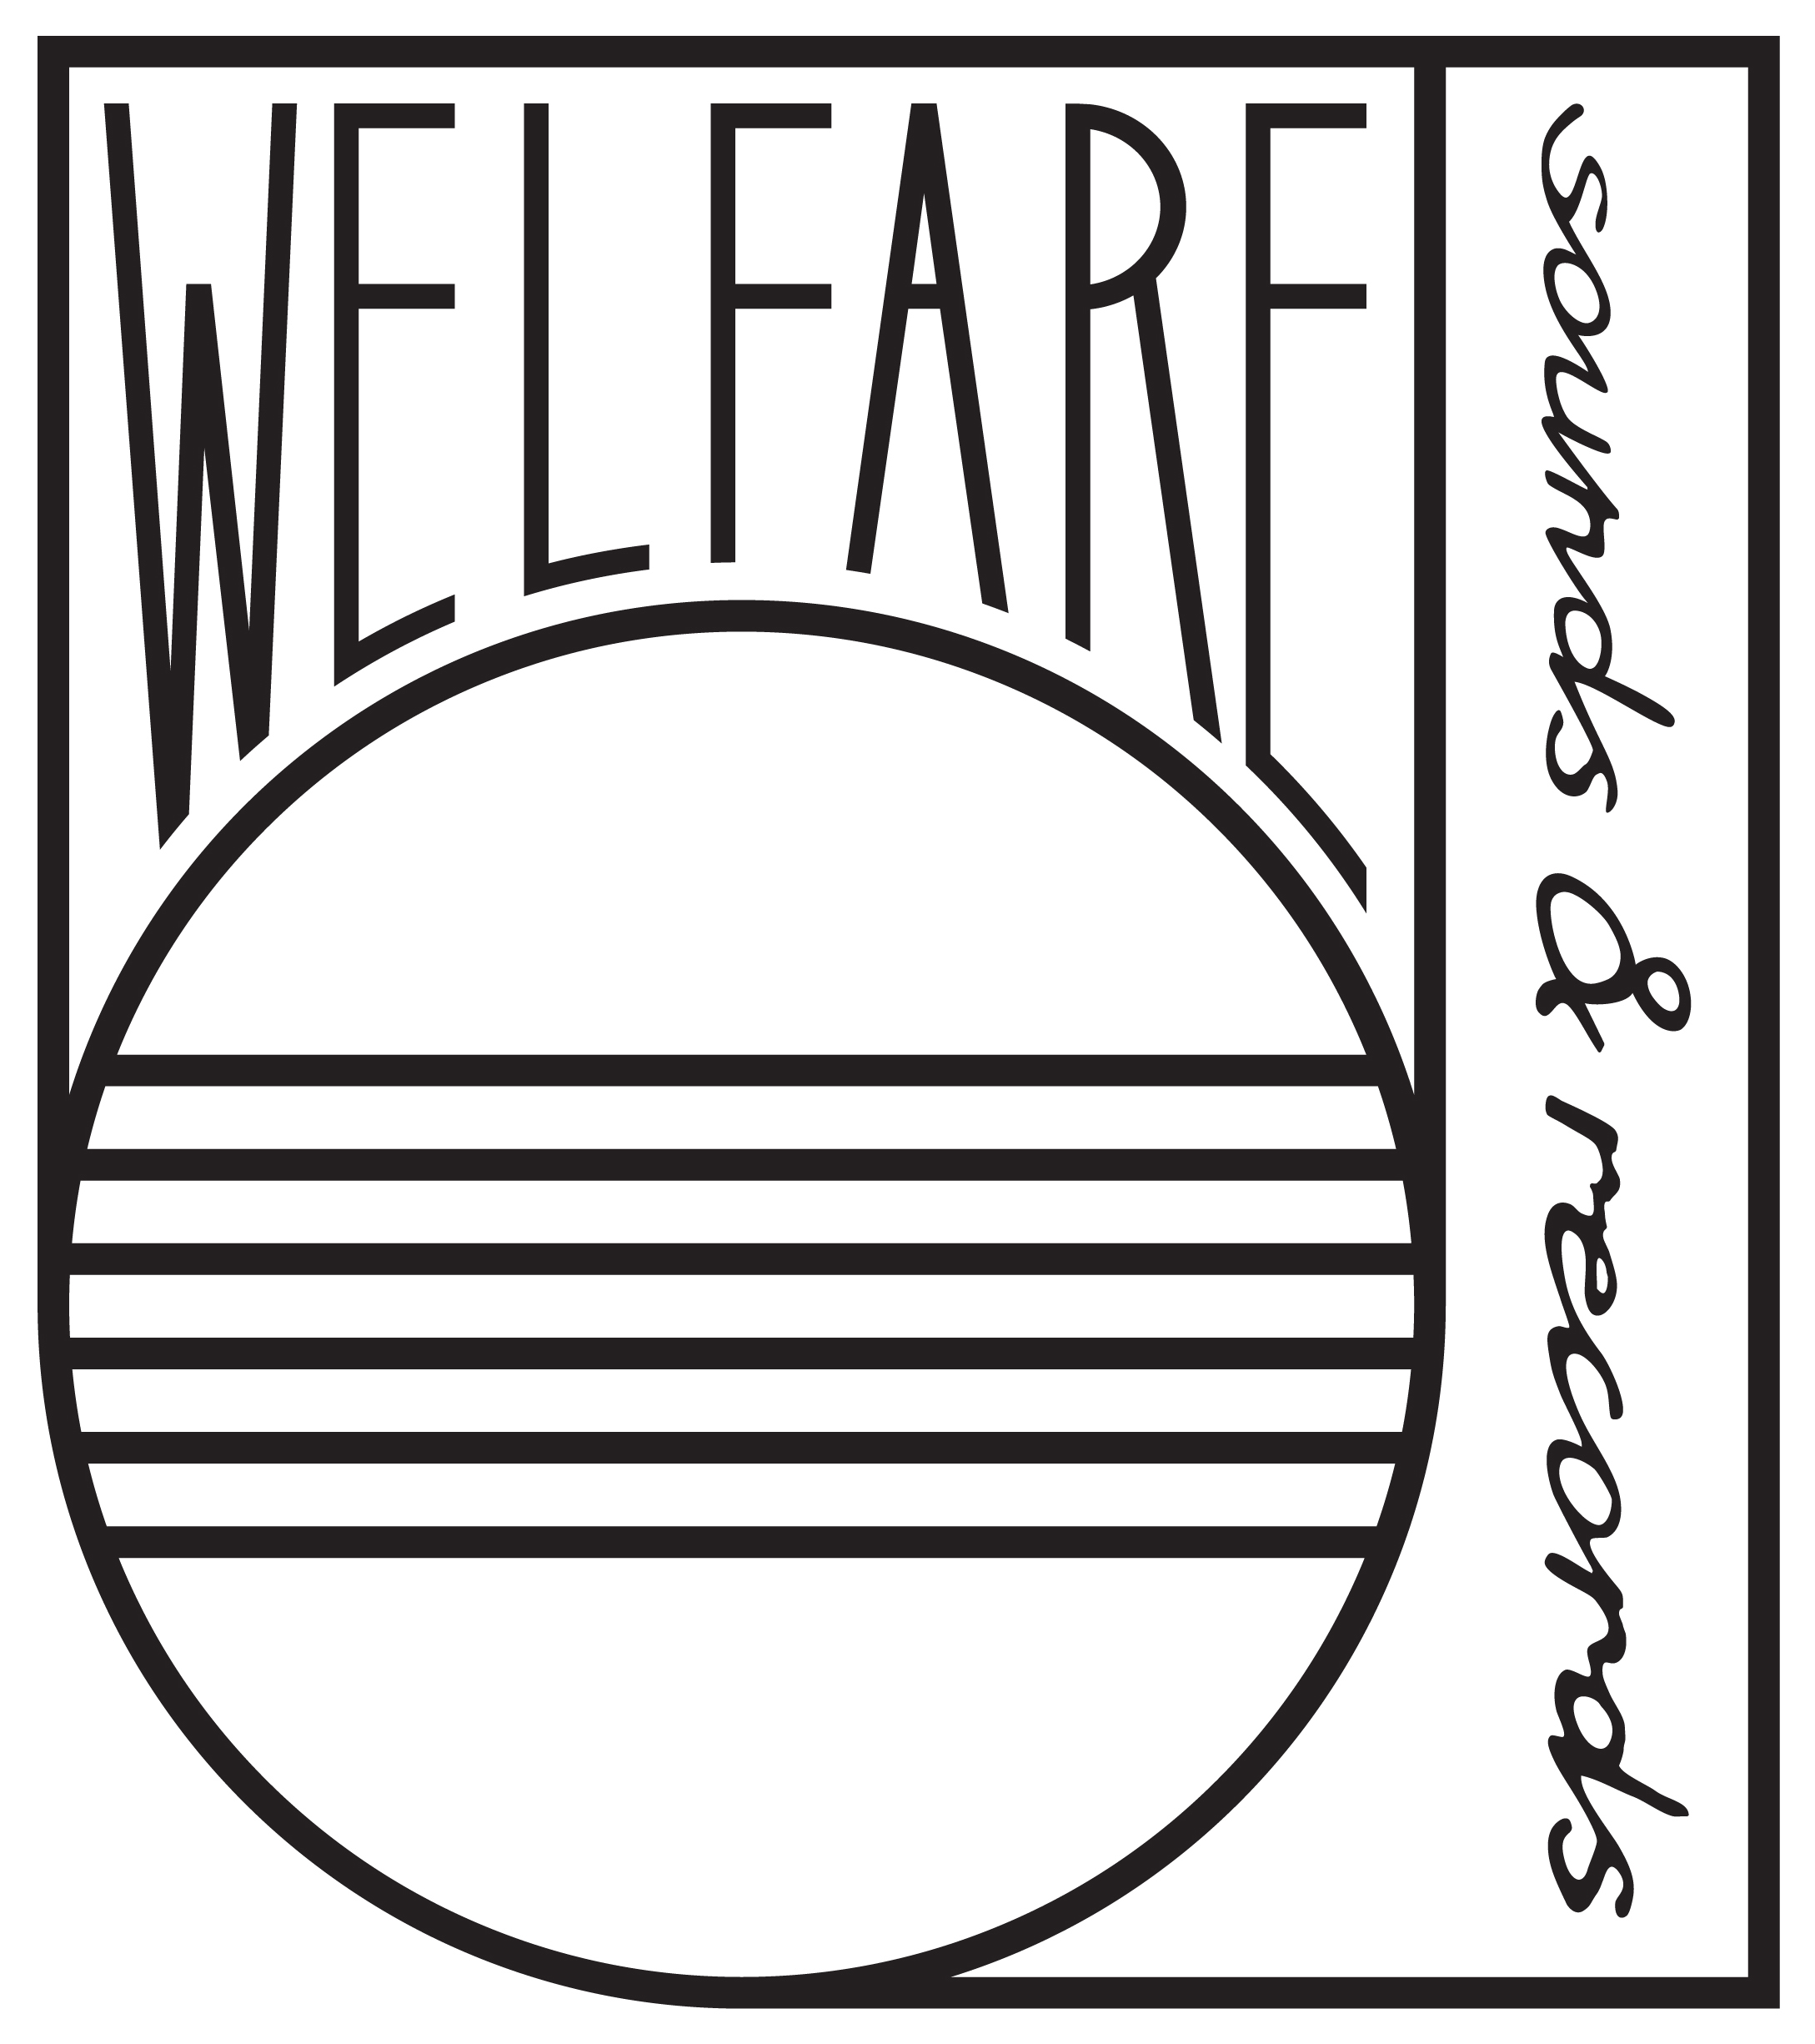 Welfare Sounds